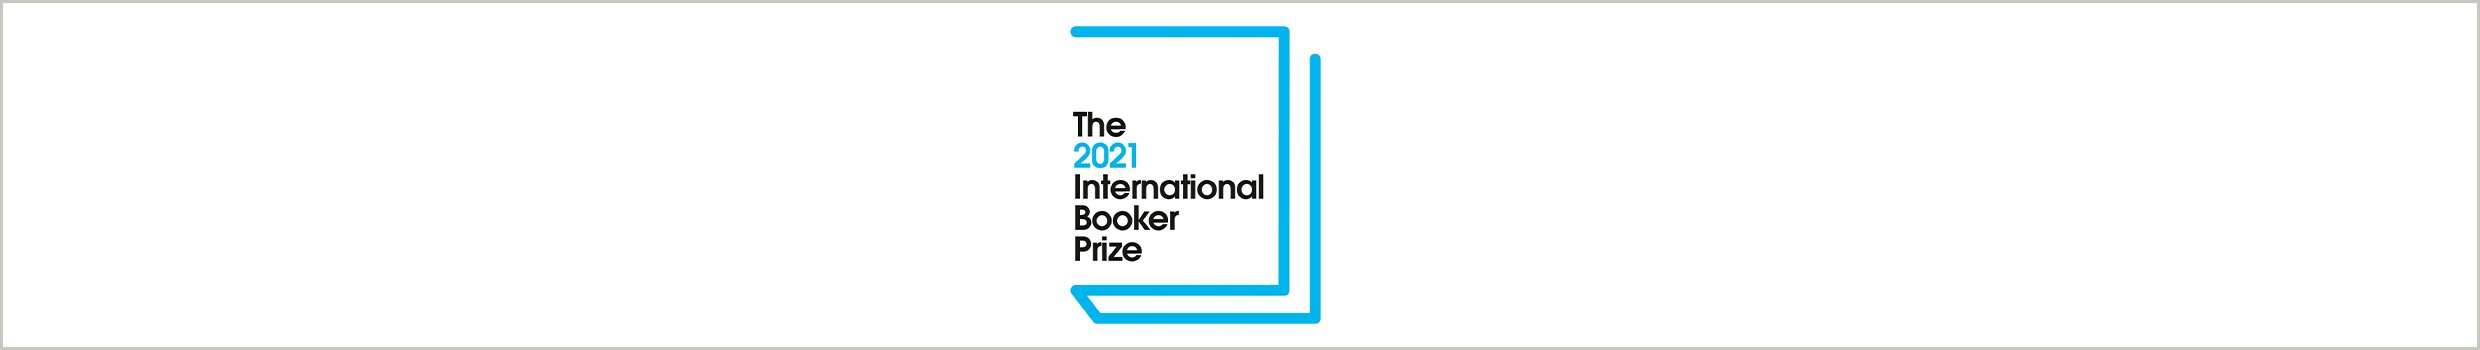 booker prize 2021